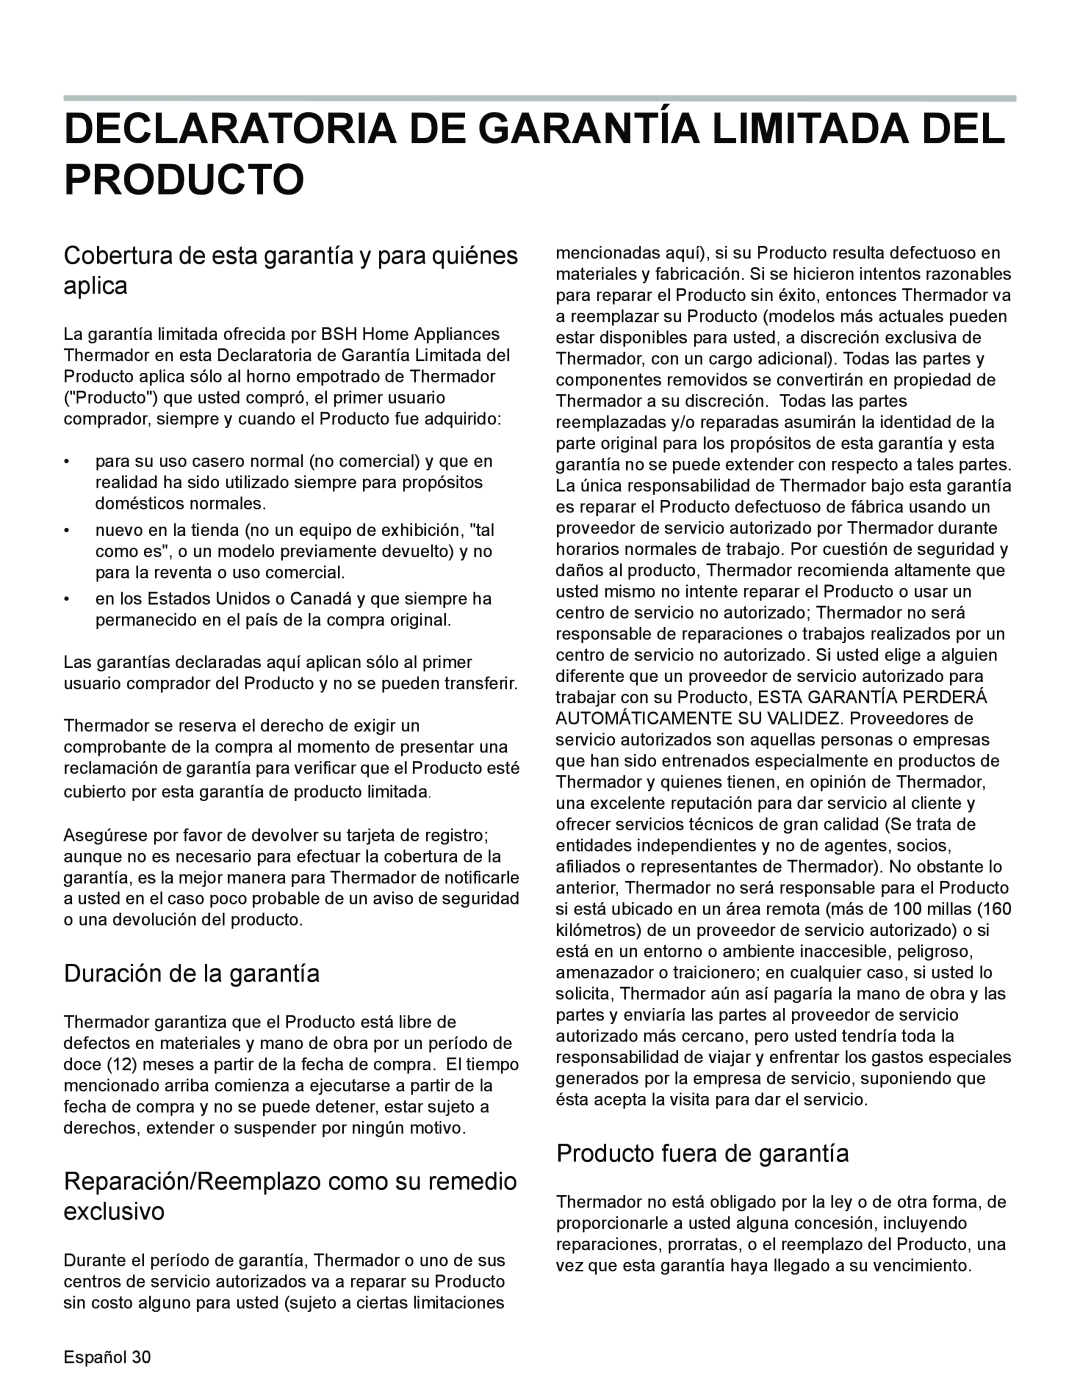 Thermador PODMW301 manual Declaratoria De Garantía Limitada Del Producto, Cobertura de esta garantía y para quiénes aplica 